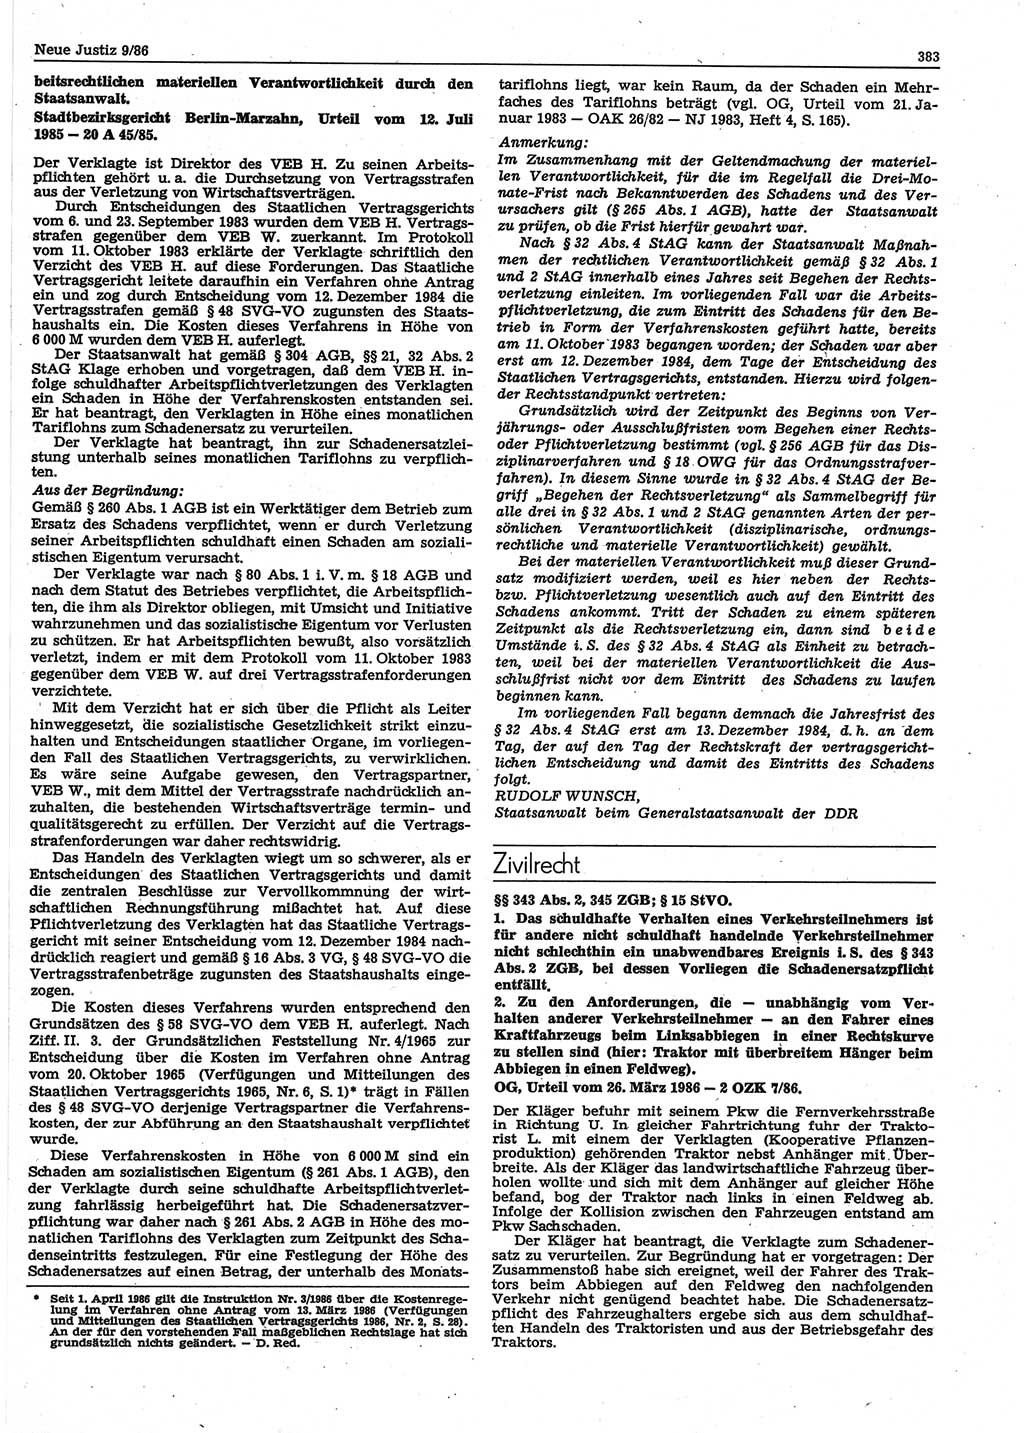 Neue Justiz (NJ), Zeitschrift für sozialistisches Recht und Gesetzlichkeit [Deutsche Demokratische Republik (DDR)], 40. Jahrgang 1986, Seite 383 (NJ DDR 1986, S. 383)